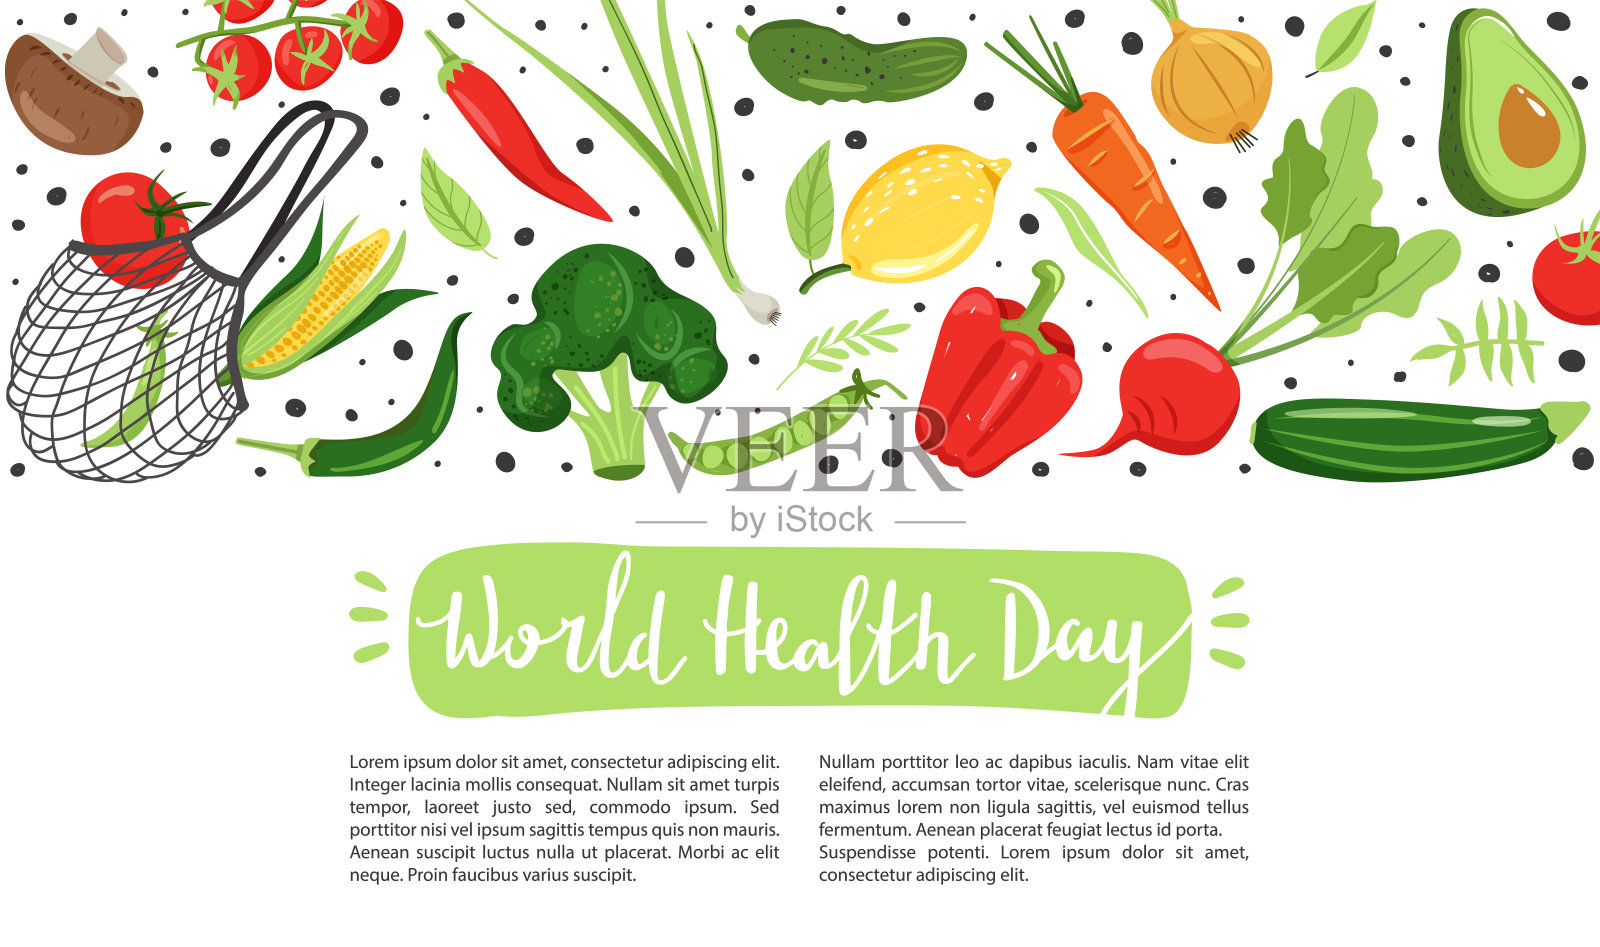 健康的生活理念。不同蔬菜的生态友好生活。插画图片素材